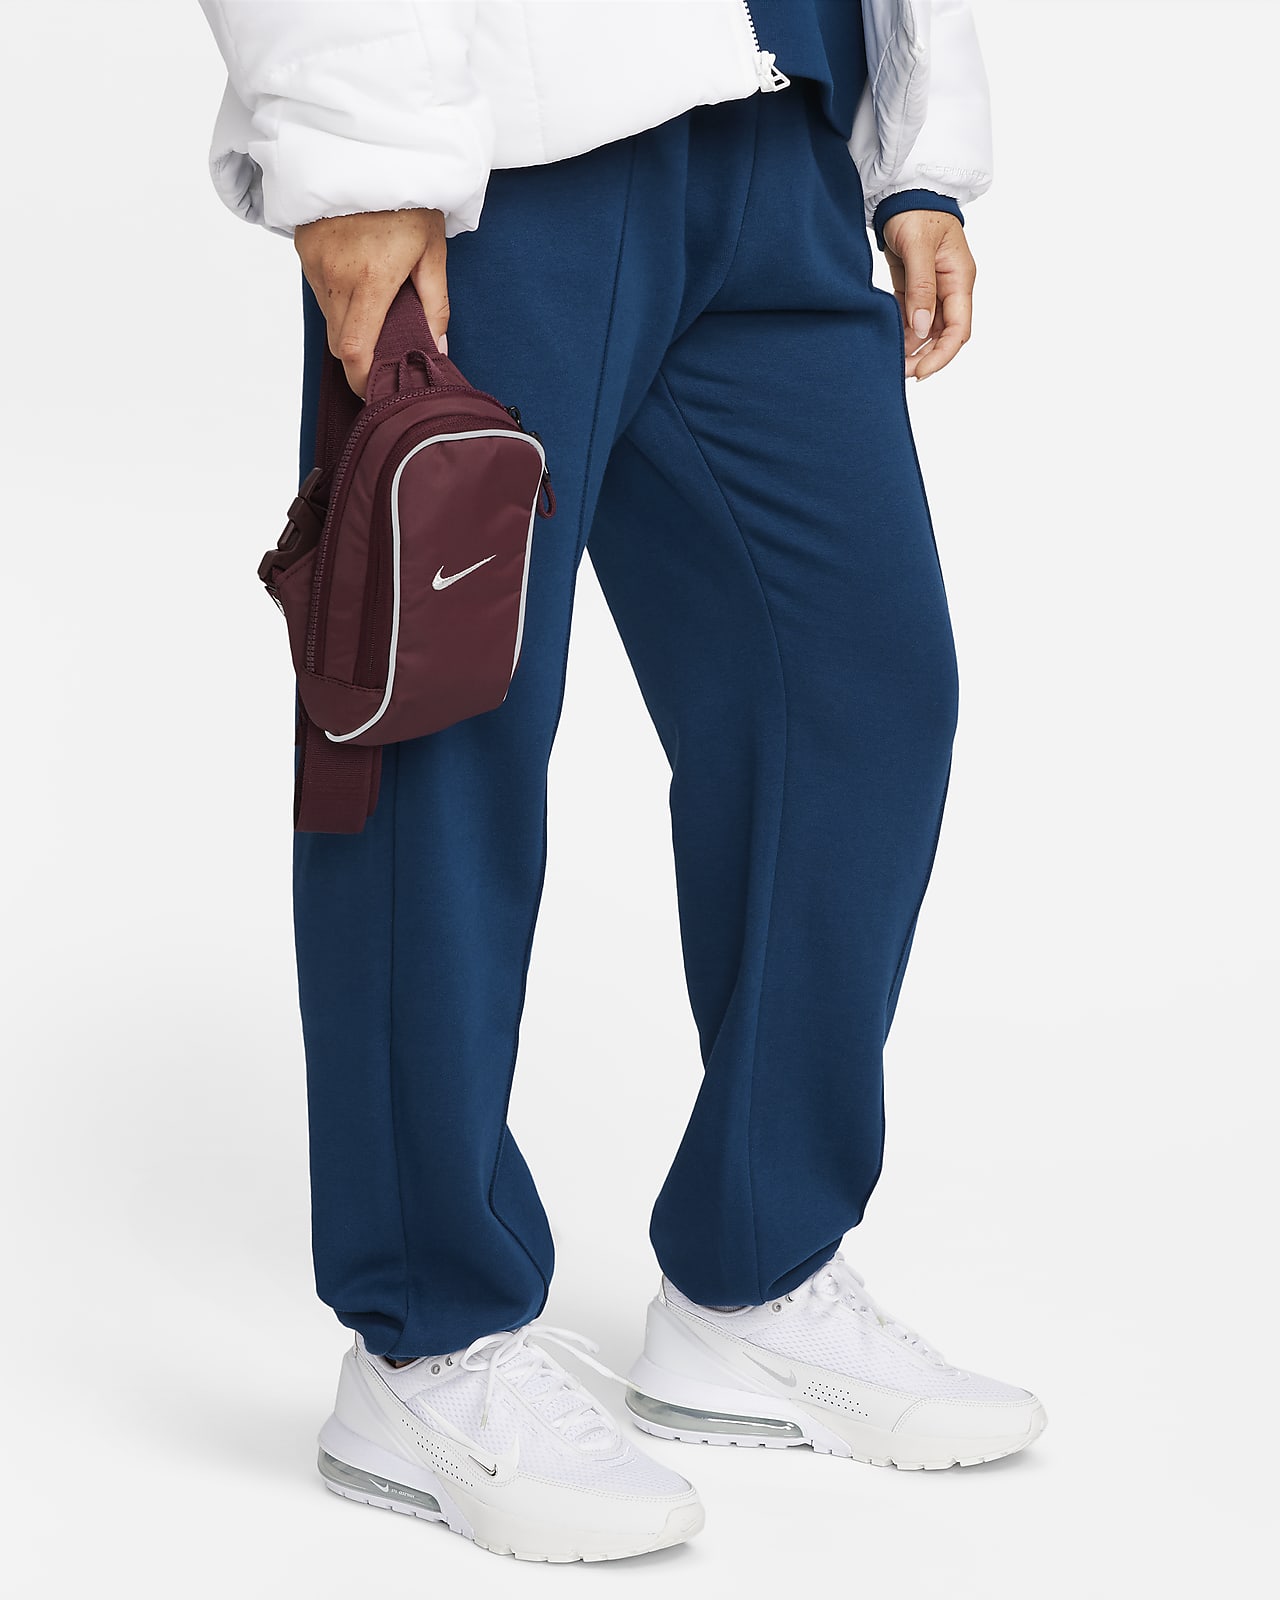 Taška Nike Sportswear Essential přes rameno (1 l)